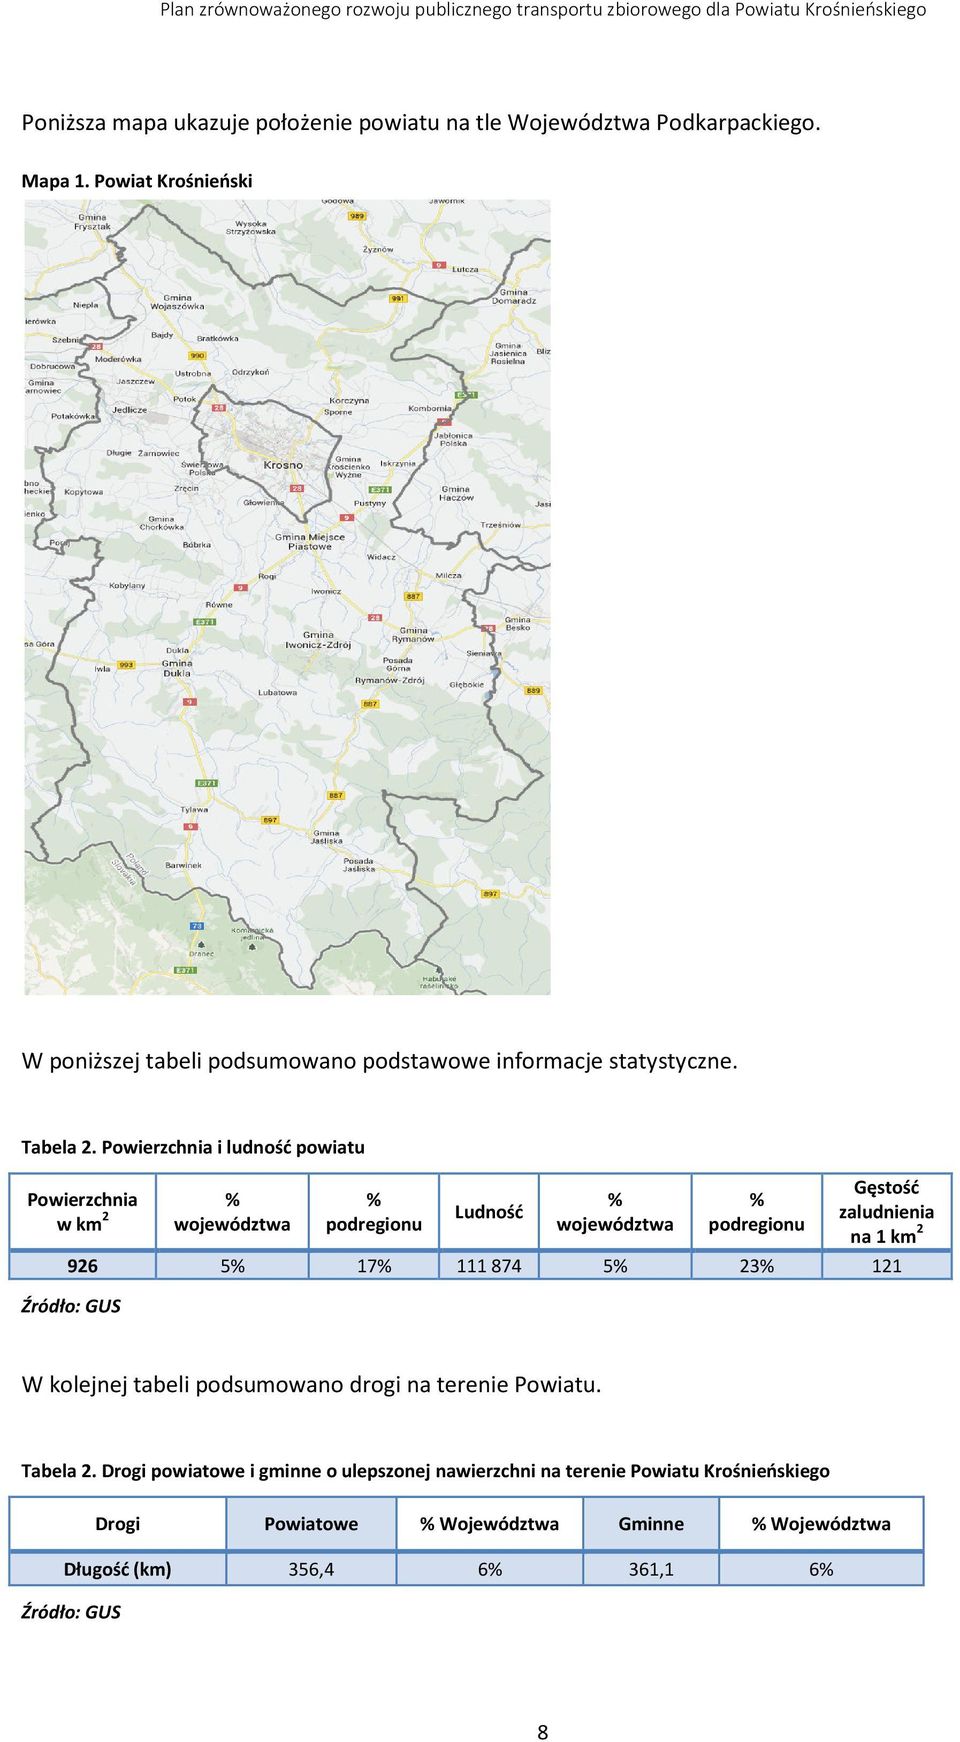 Powierzchnia i ludność powiatu Powierzchnia w km 2 % województwa % podregionu Ludność % województwa % podregionu Gęstość zaludnienia na 1 km 2 926 5%